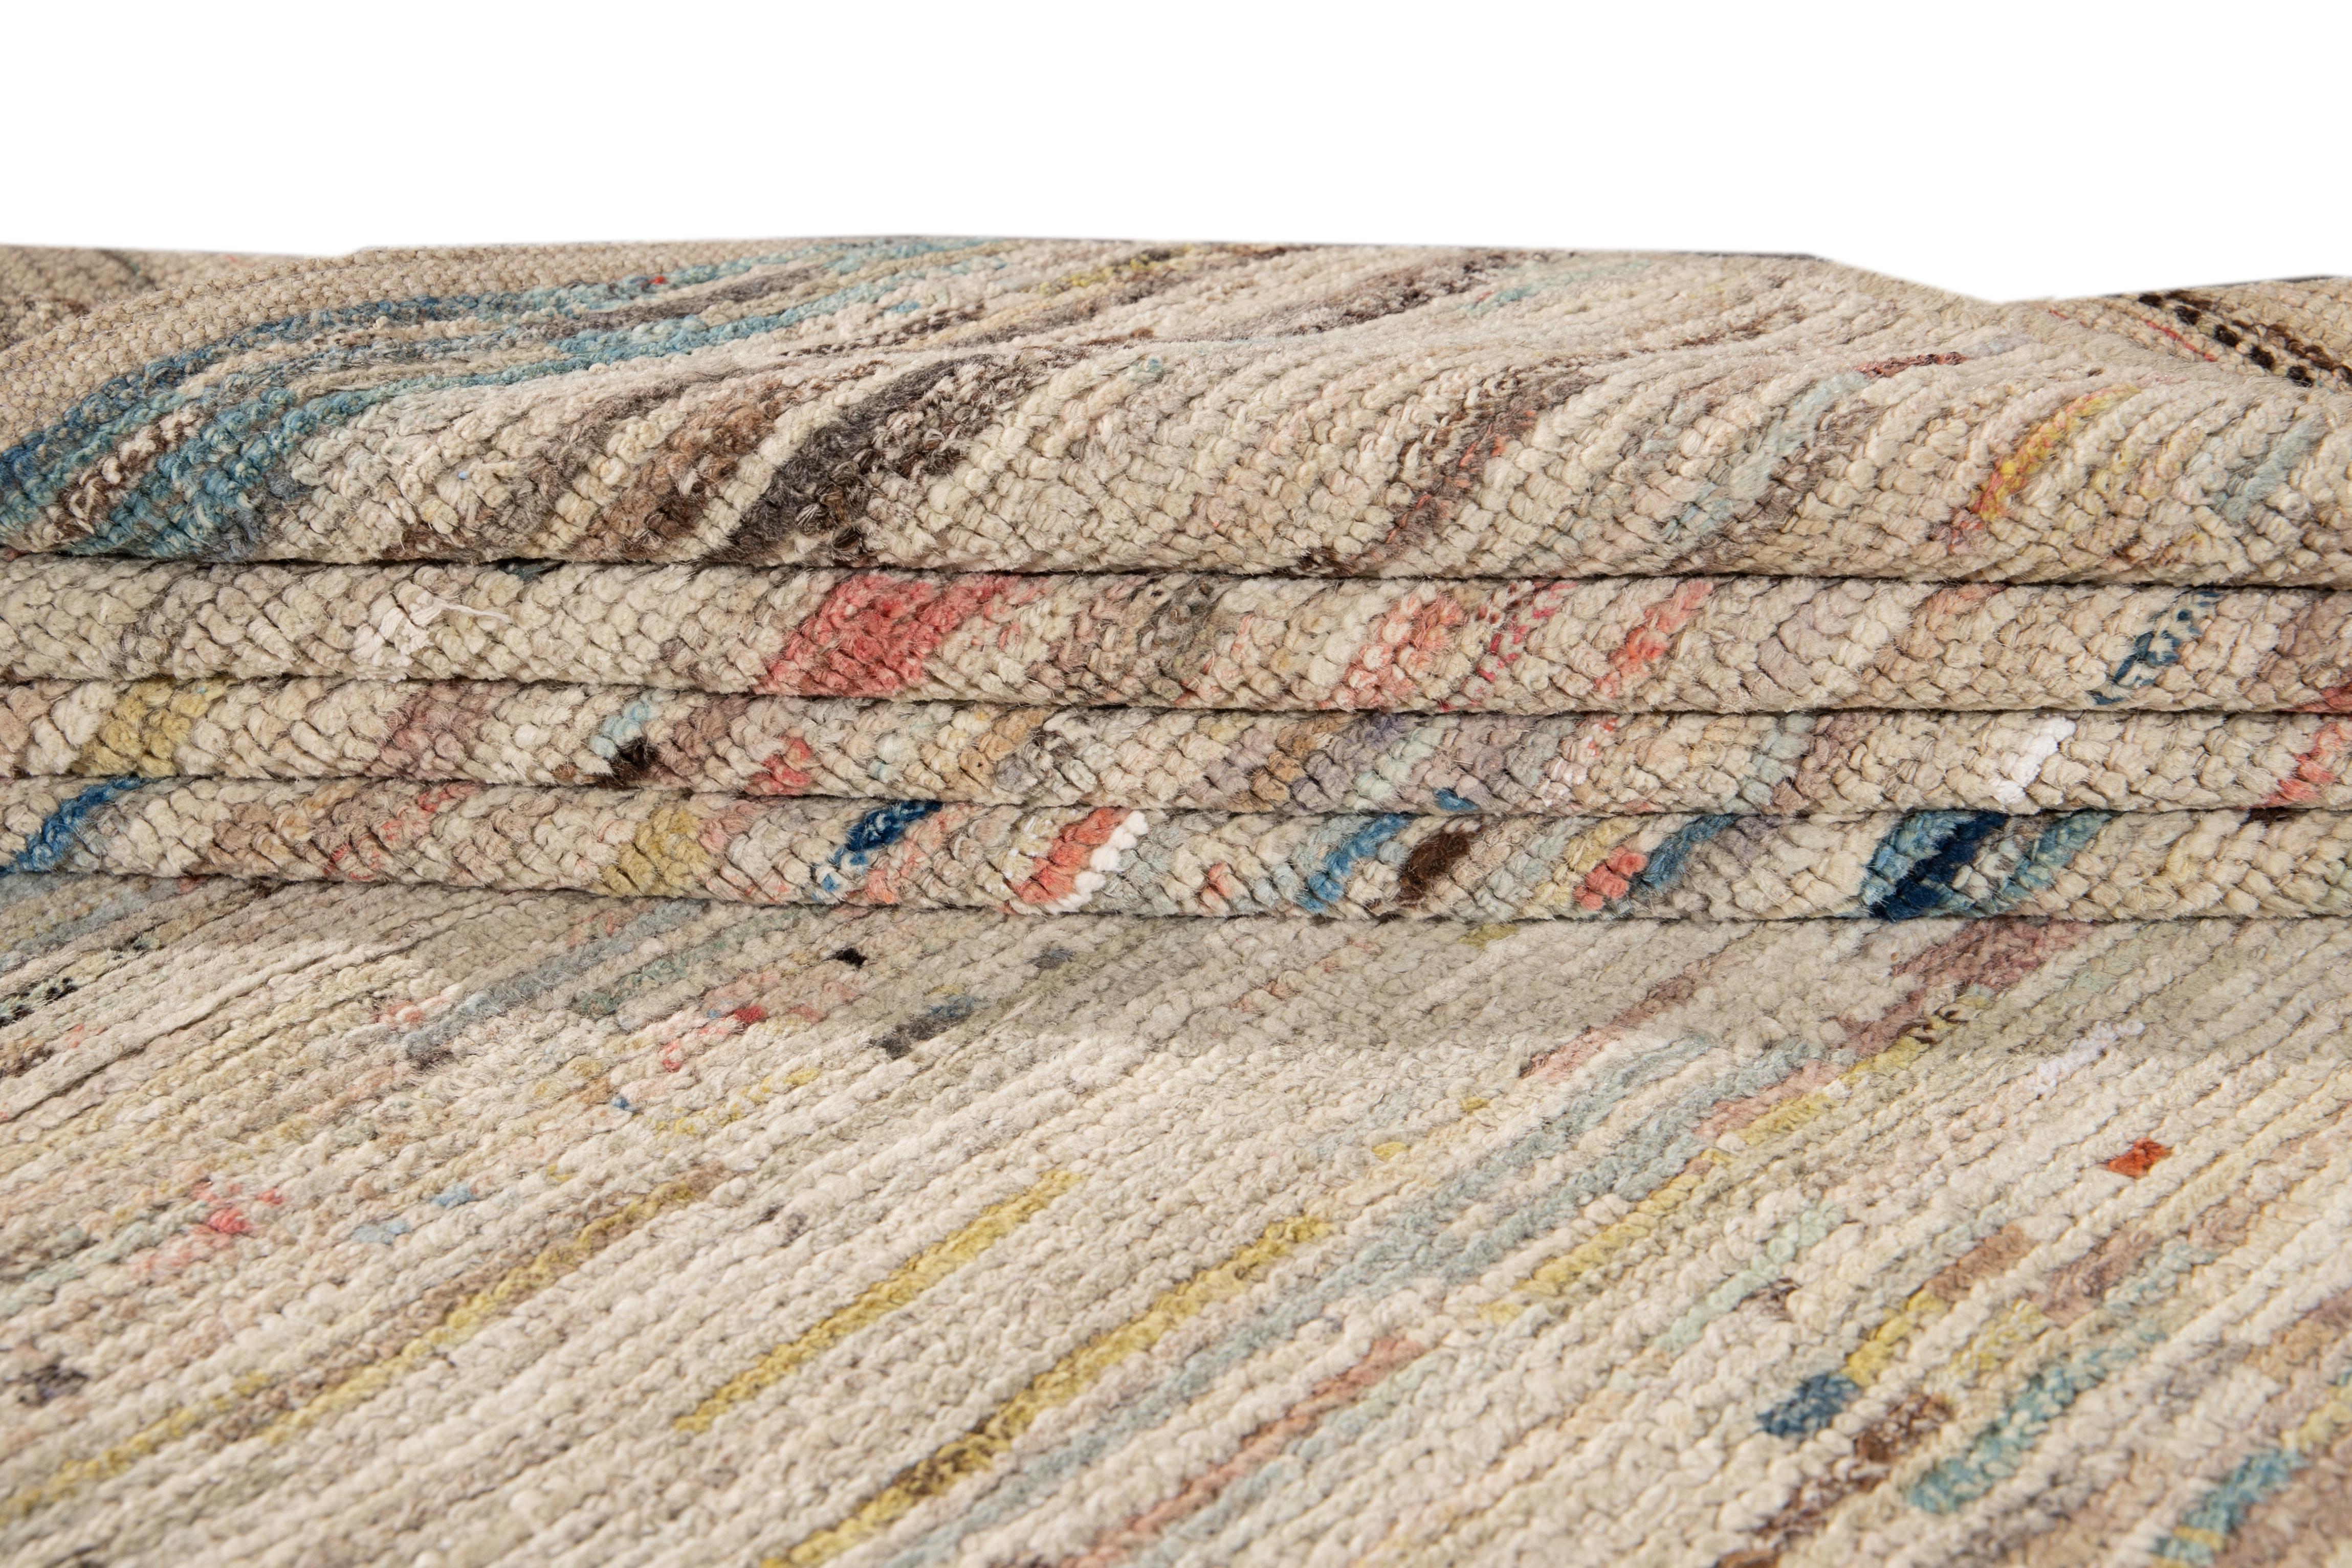 Magnifique tapis de style marocain en laine nouée à la main avec un champ ivoire. Ce tapis présente des accents multicolores dans un superbe motif géométrique abstrait.

Ce tapis mesure 7'6